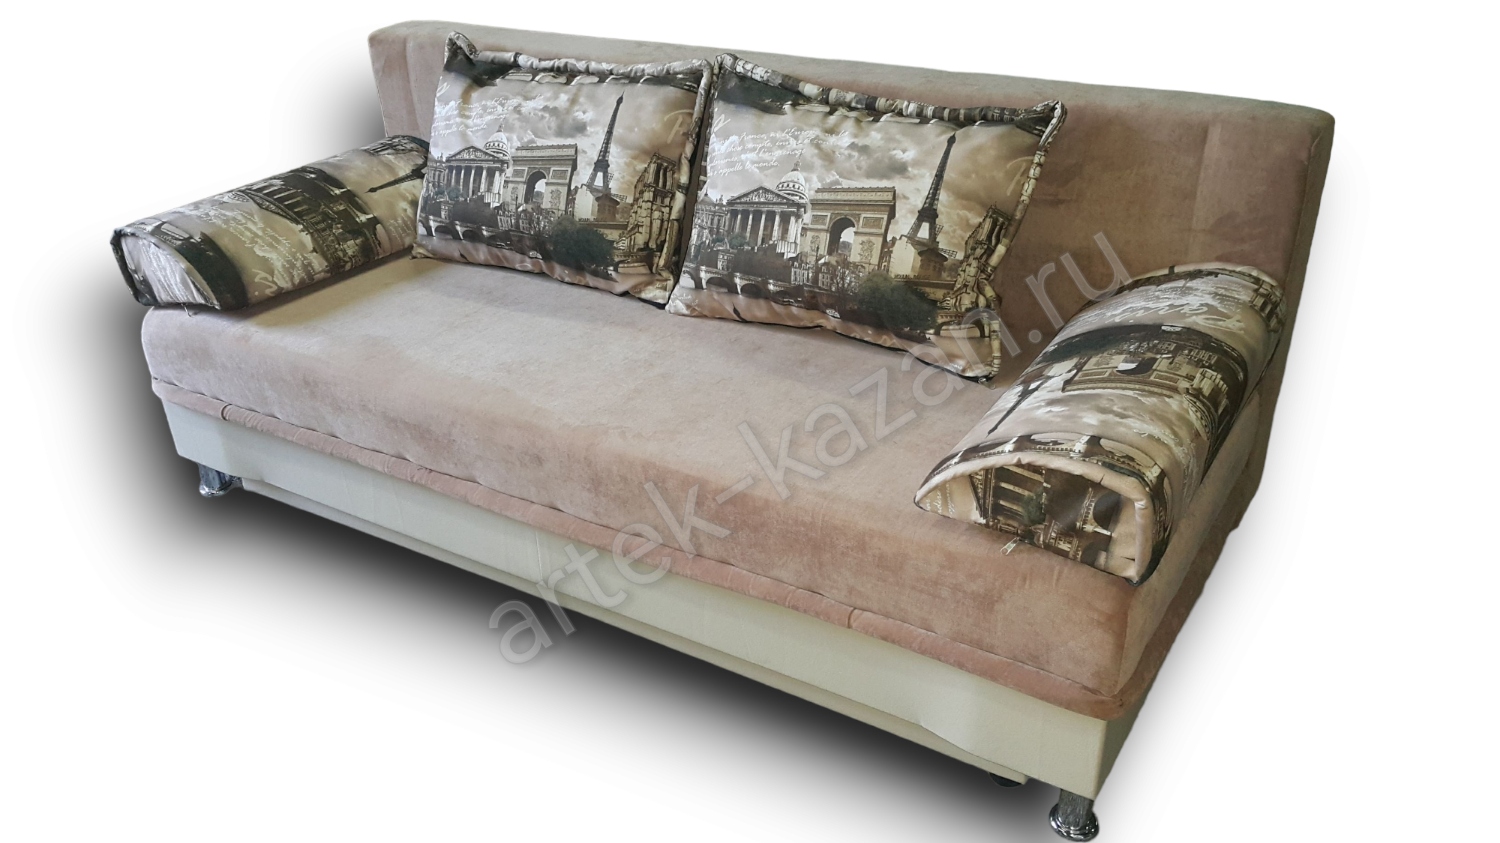 диван еврокнижка Эконом фото № 29. Купить недорогой диван по низкой цене от производителя можно у нас.